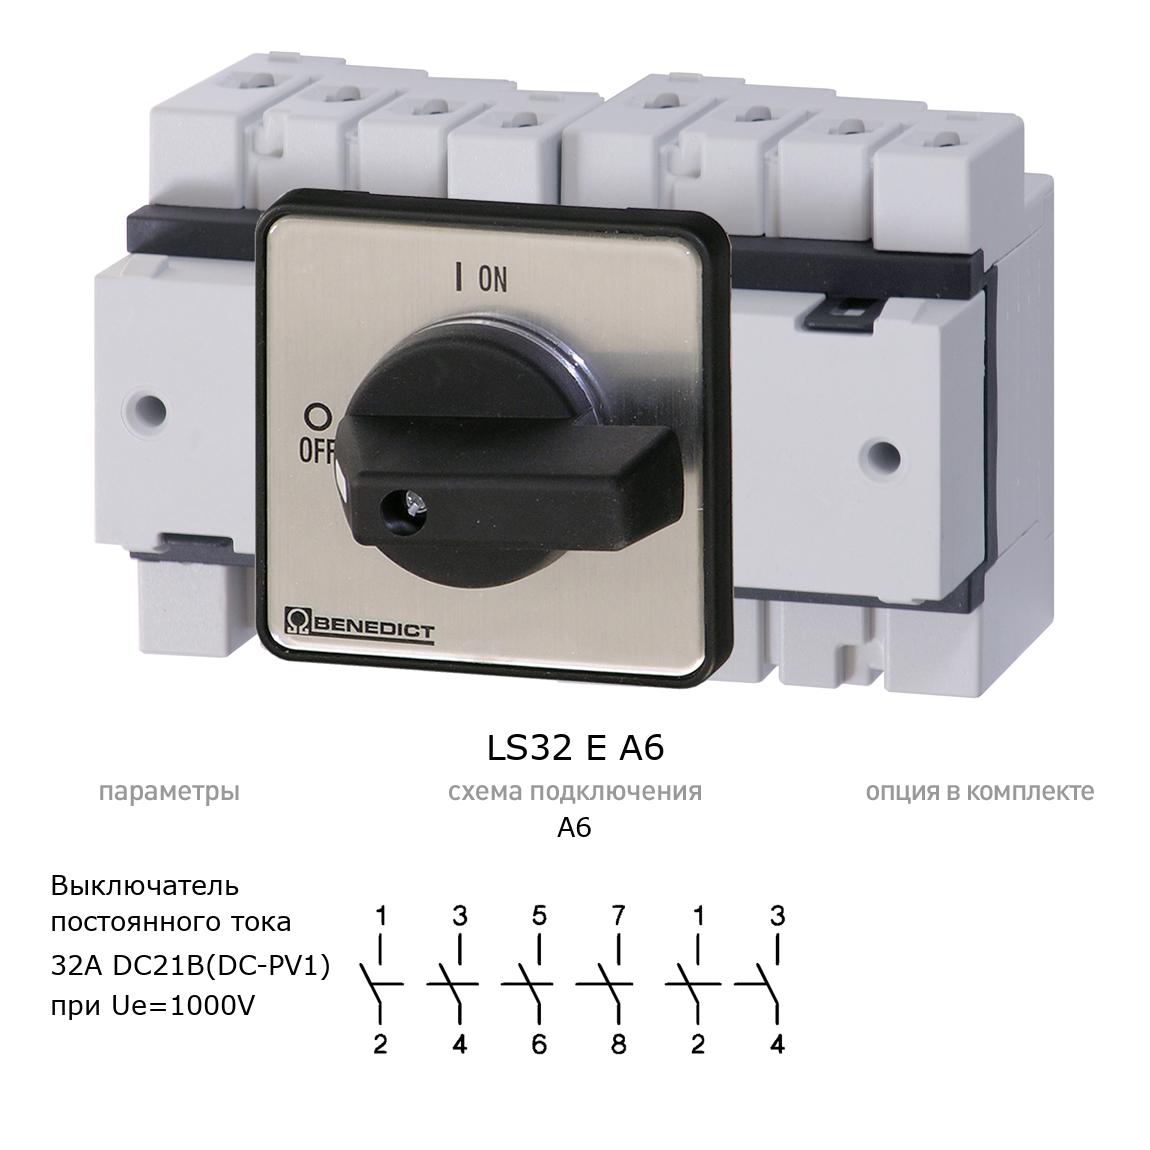 Кулачковый переключатель для постоянного тока (DC) LS32 E A6 BENEDICT